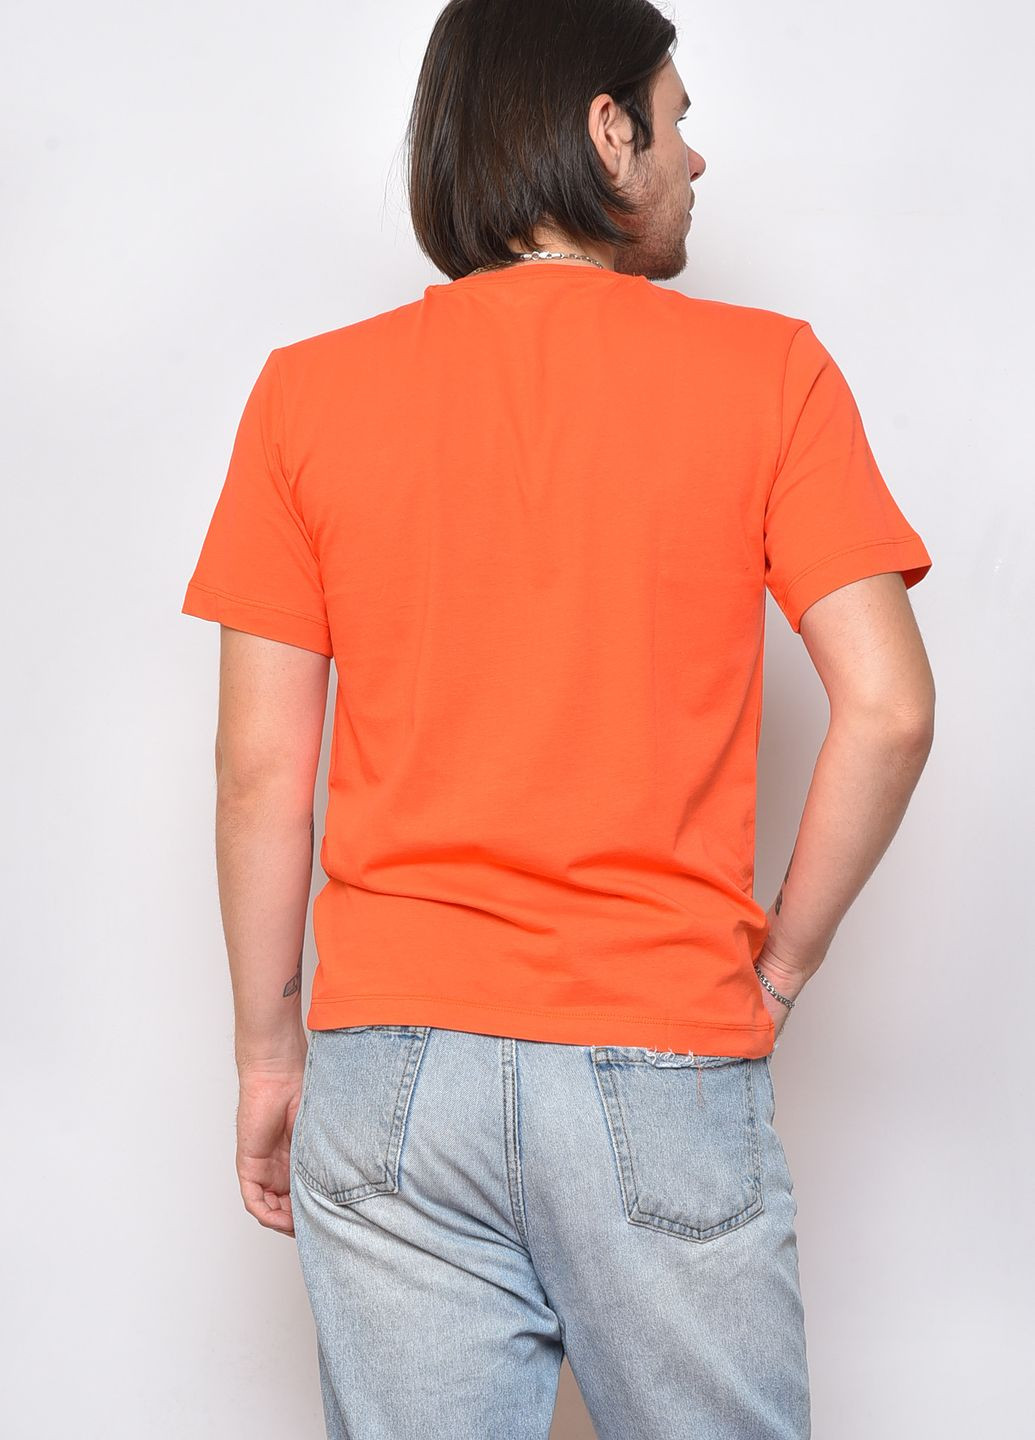 Коралловая футболка мужская кораллового цвета Let's Shop